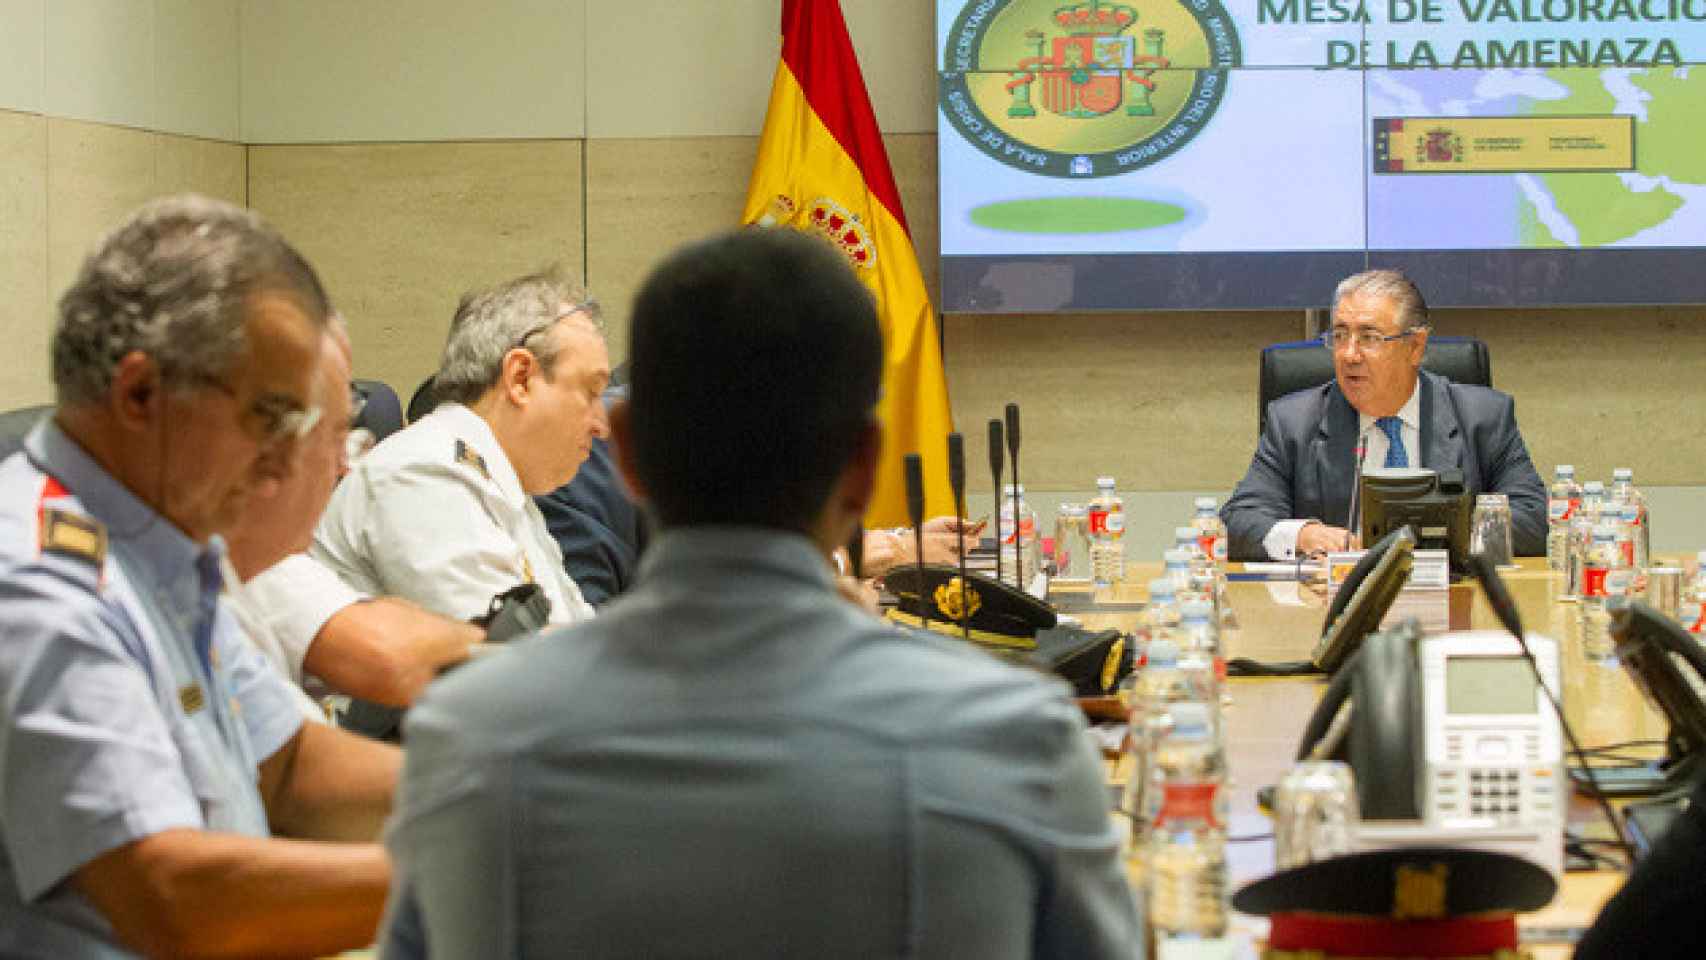 El ministro de Interior, Juan Ignacio Zoido, preside la mesa de valoración de la amenaza terrorista en la sala de crisis del Ministerio del Interior / CG